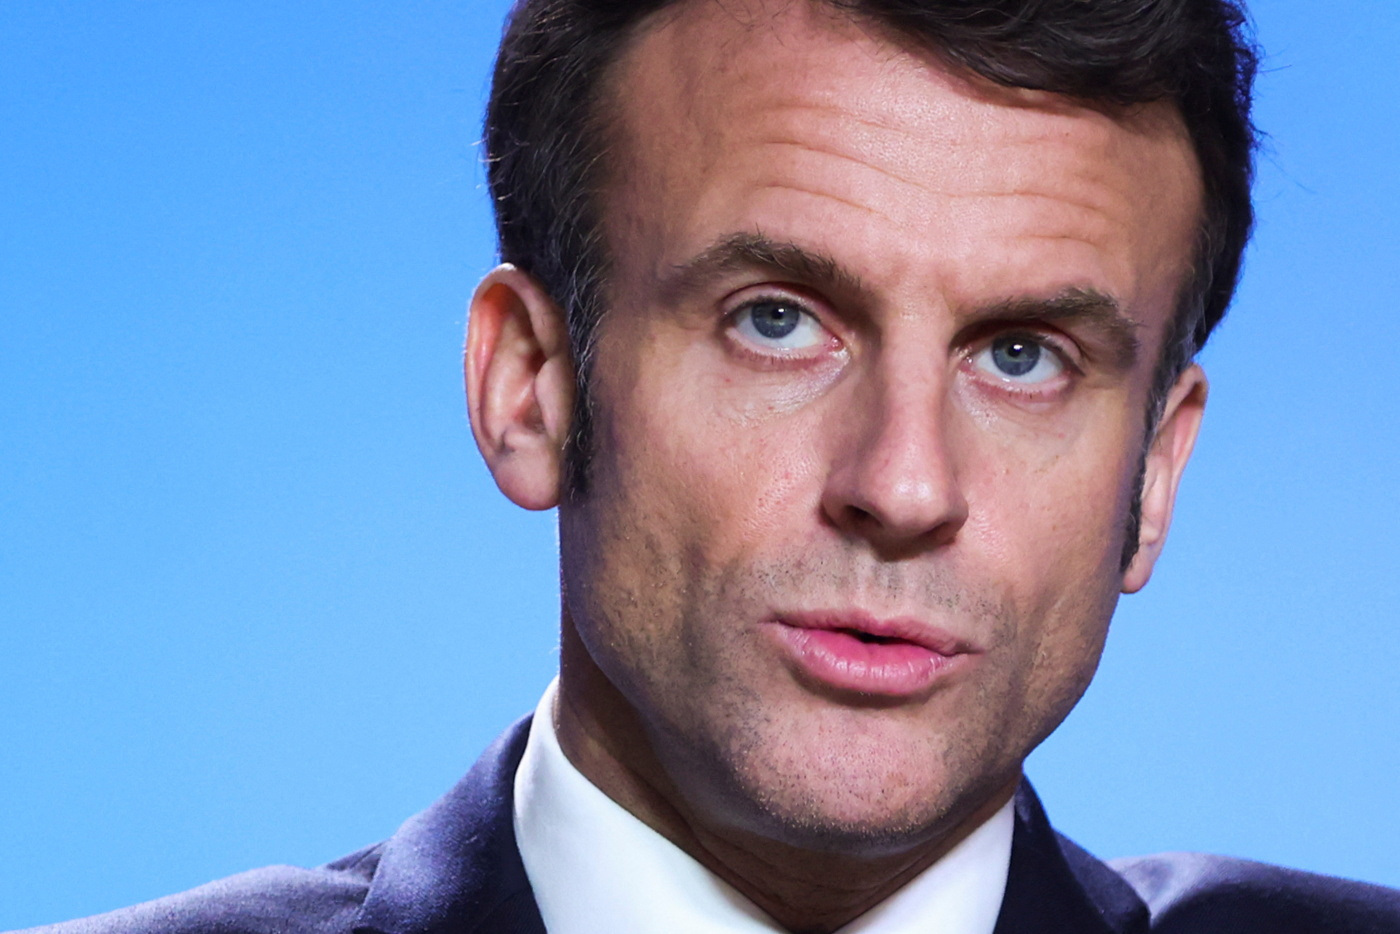 Retraites : Macron souhaite que la réforme « puisse aller au bout de son cheminement démocratique dans le respect de tous»